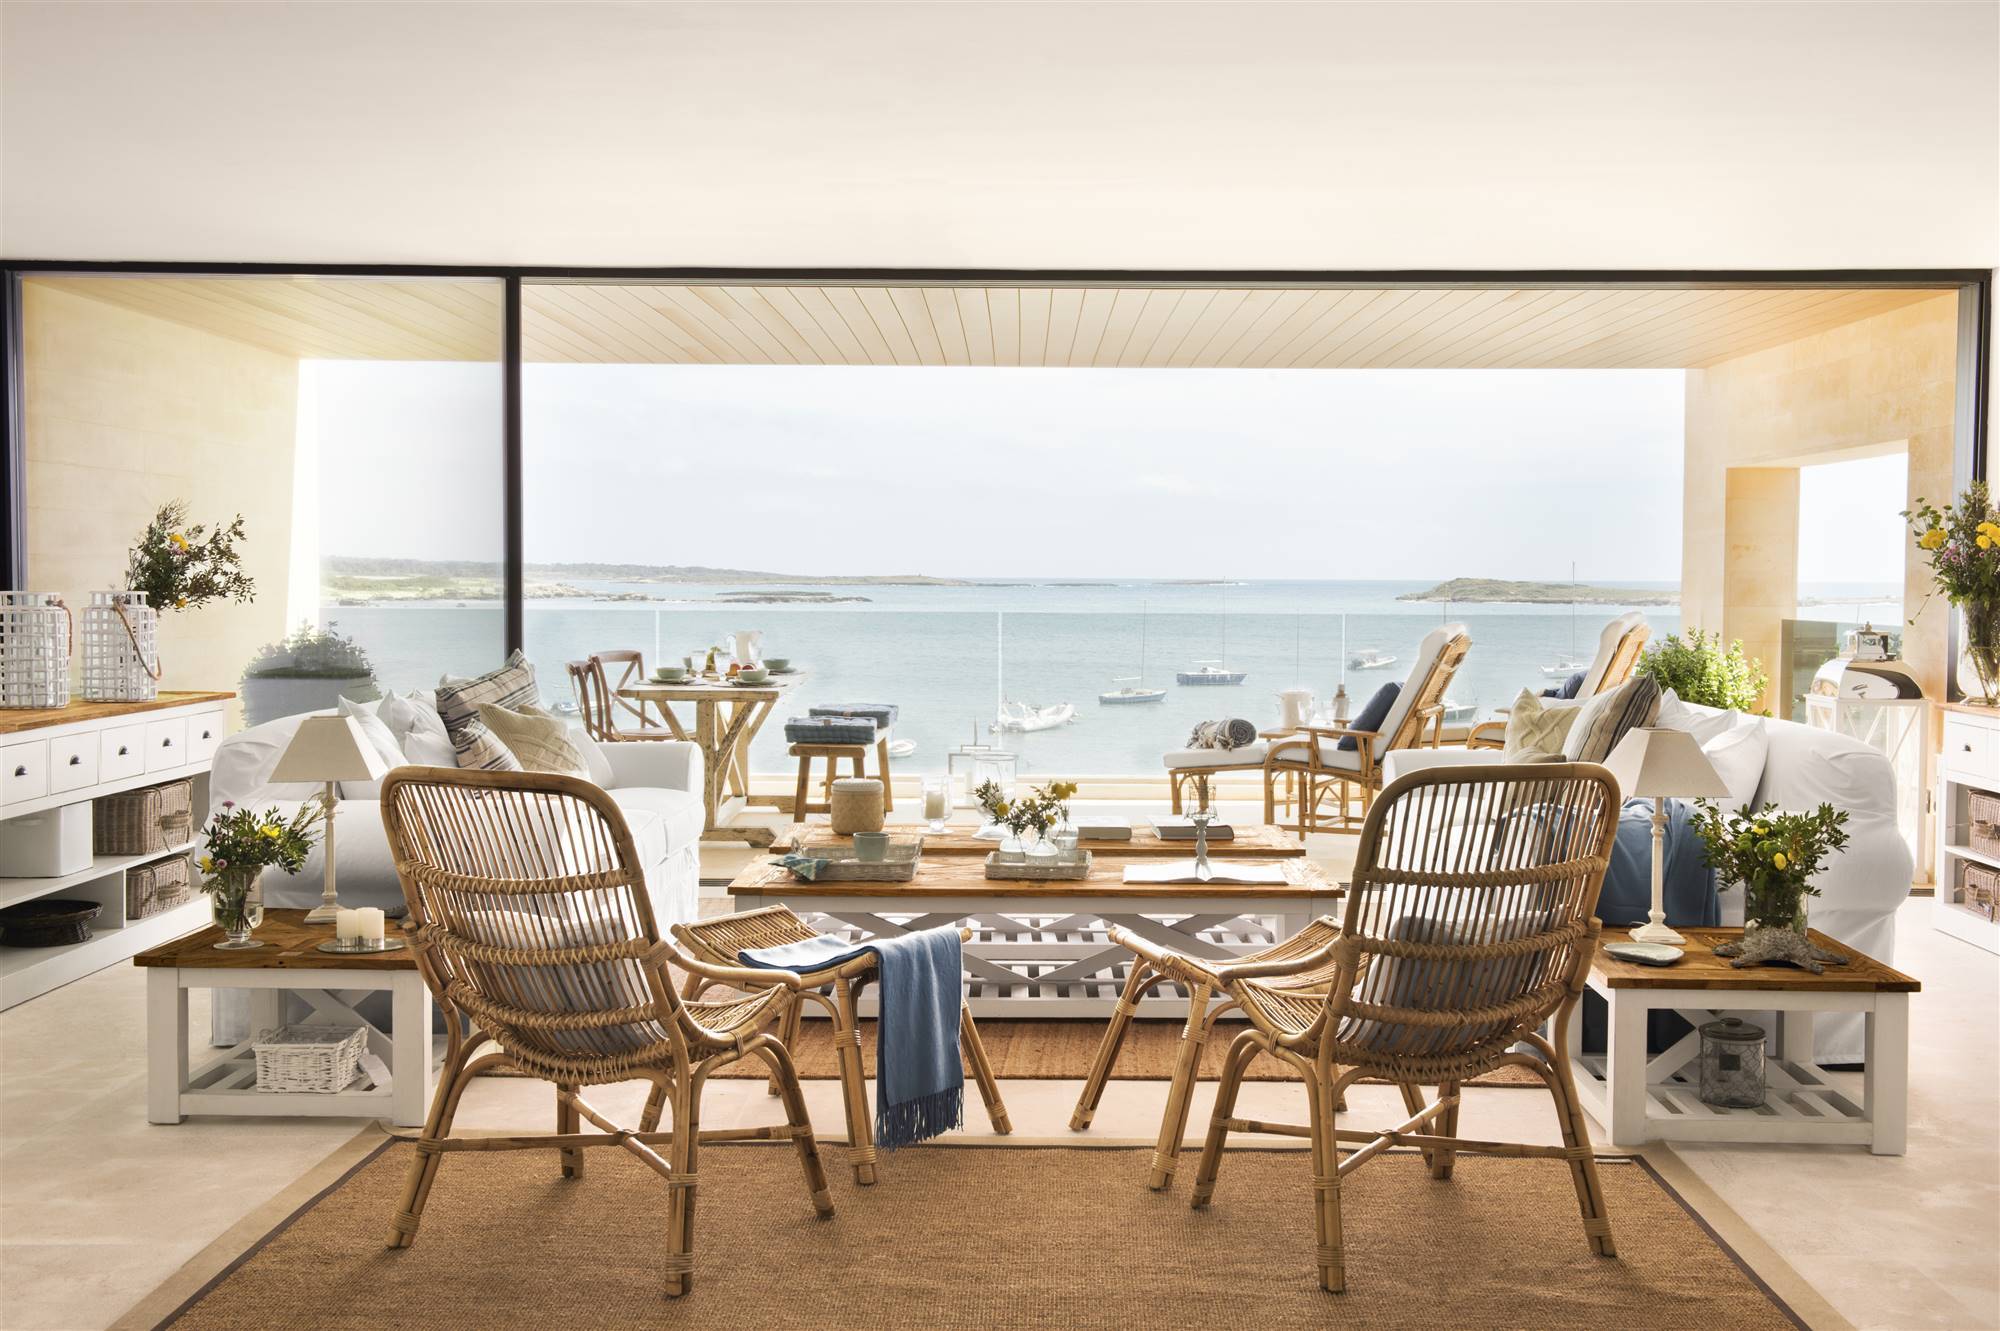 Salón con vistas al mar, sillones de fibras y sofás blancos 454170